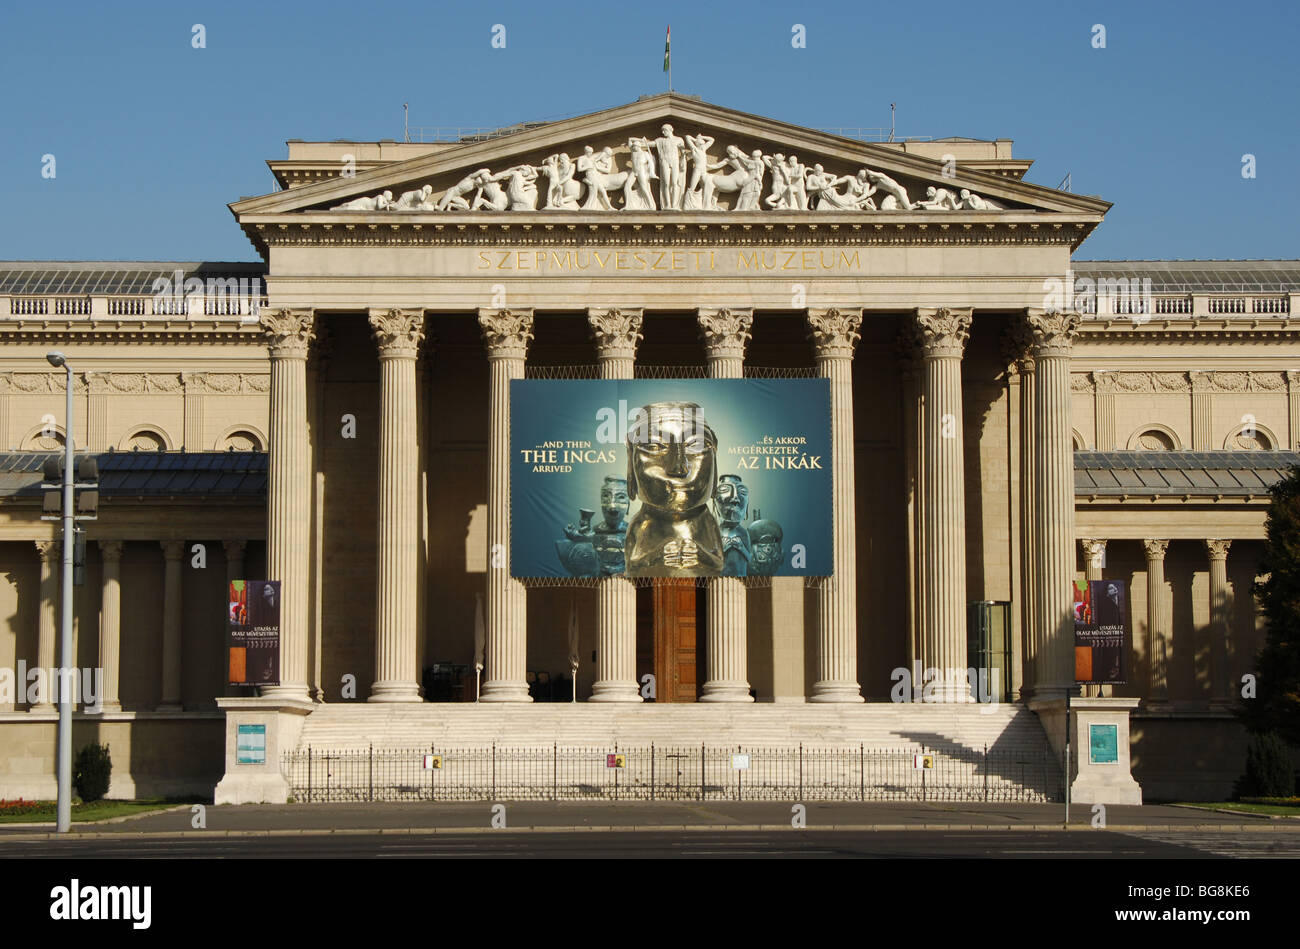 MUSEUM der bildenden Künste (Sammlung). Fassade des klassizistischen Gebäudes befindet sich in der Heldenplatz. Budapest. Ungarn. Stockfoto